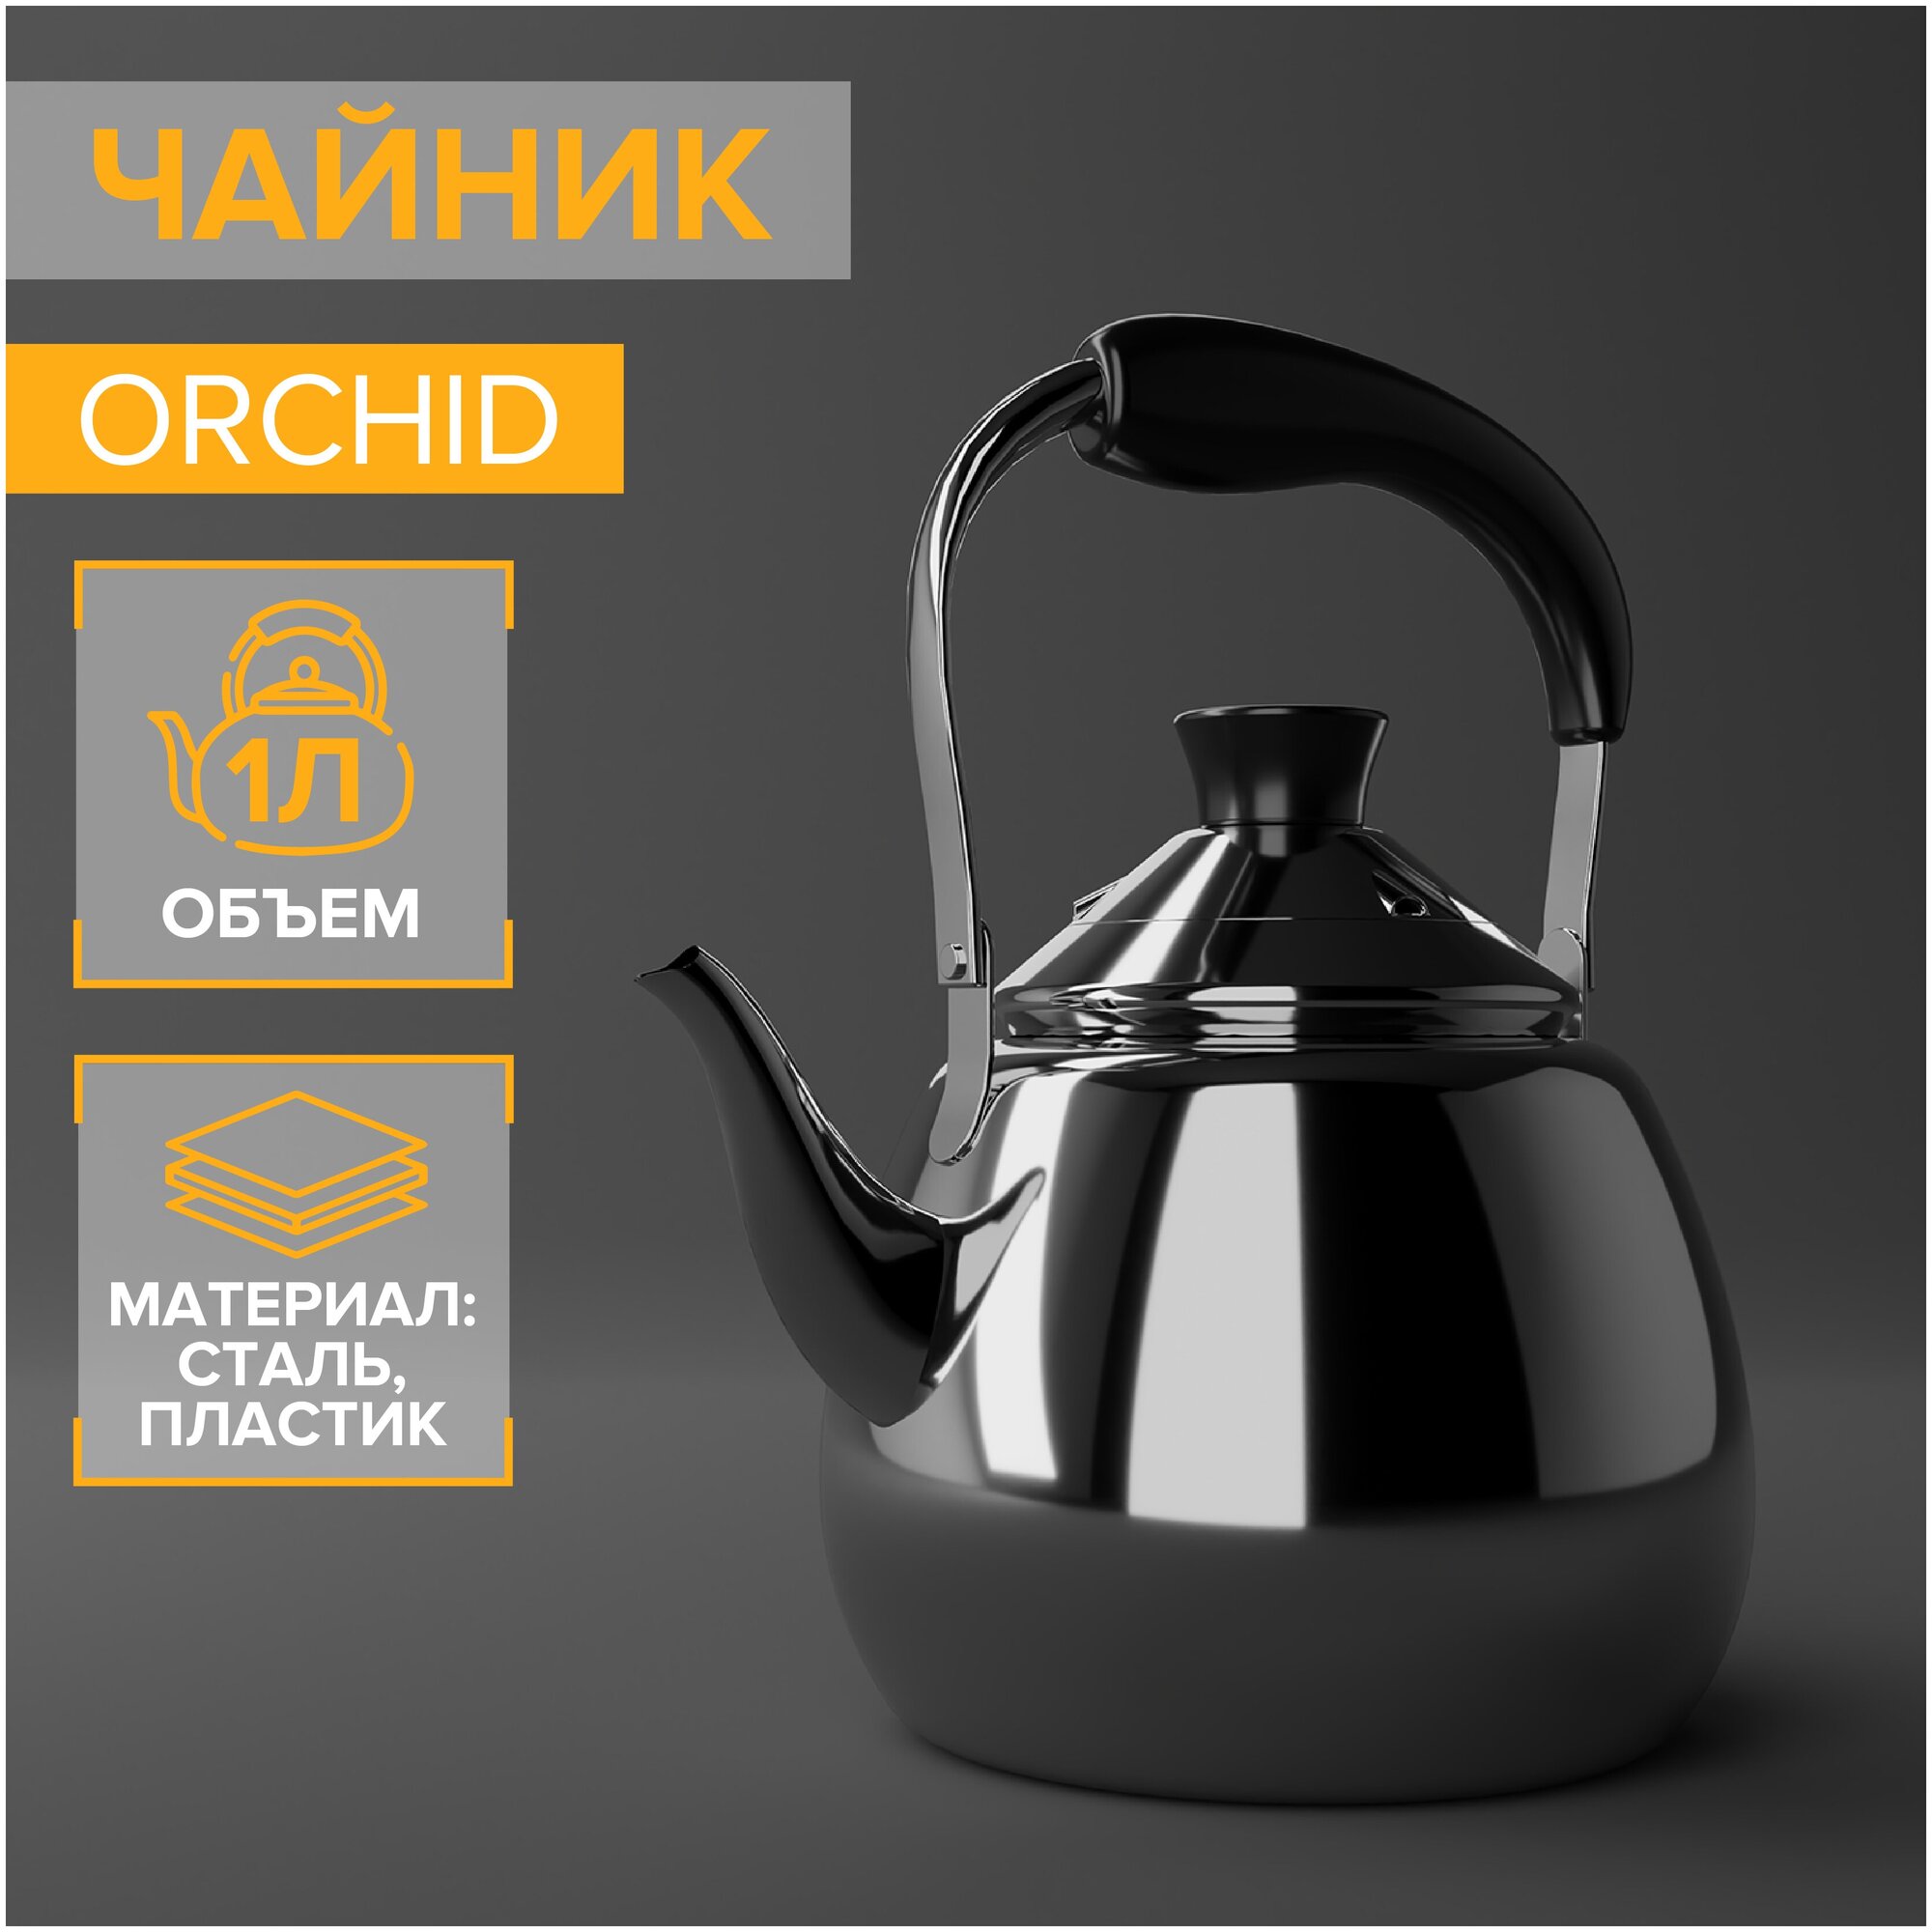 Чайник из нержавеющей стали Orchid, 1 л, цвет серебряный